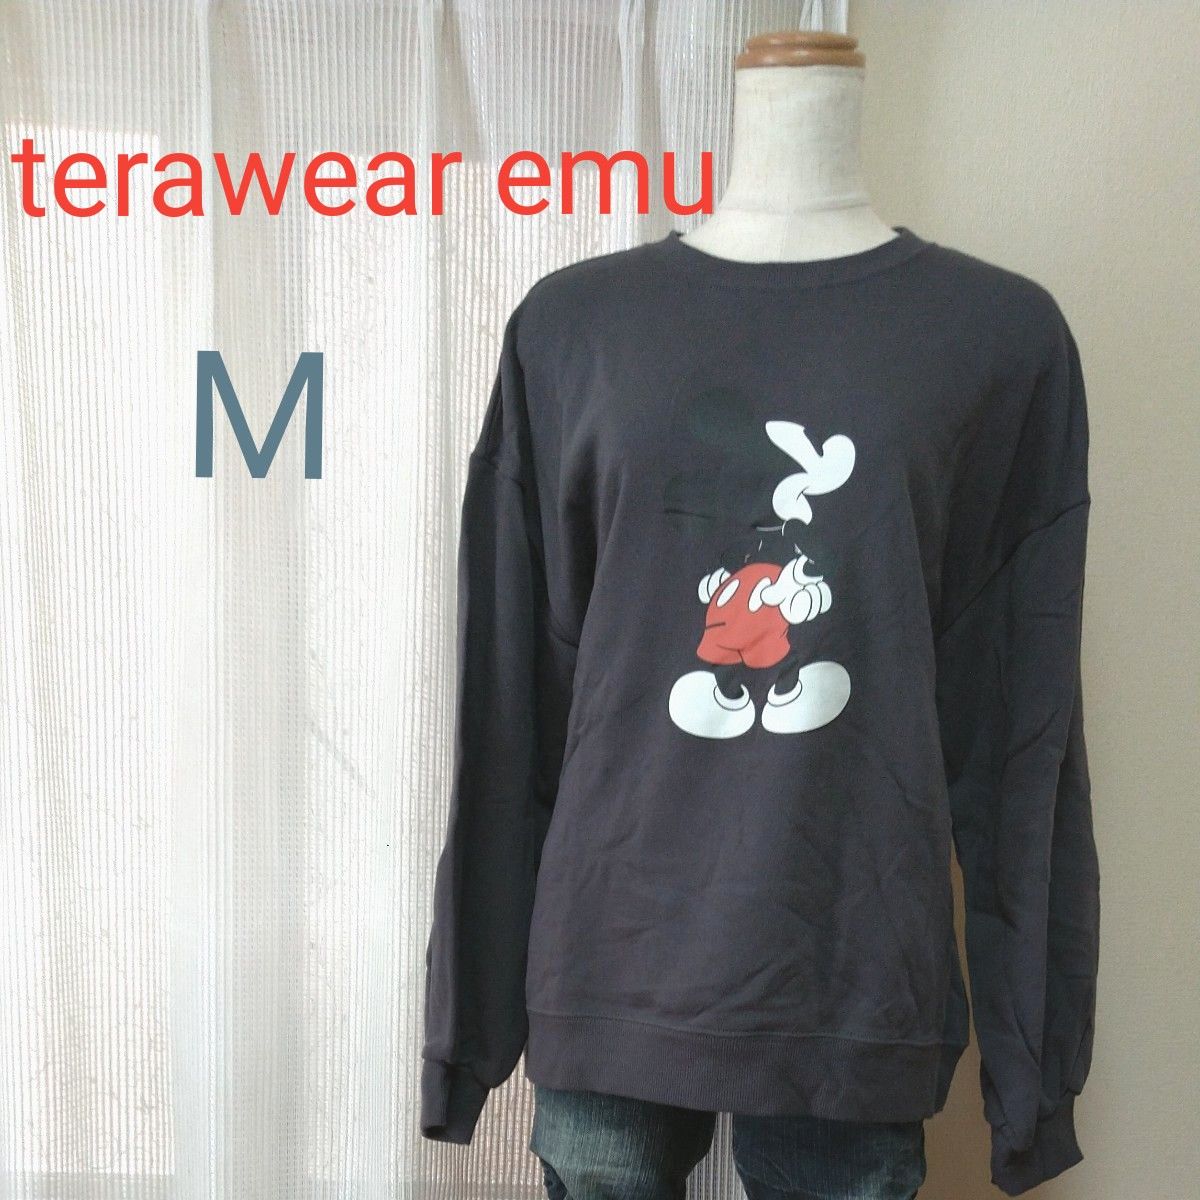 ★terawear emu★ しまむら ミッキーマウス 淡黒 Mサイズ TRW ボリュームPO プルオーバー トップス トレーナー